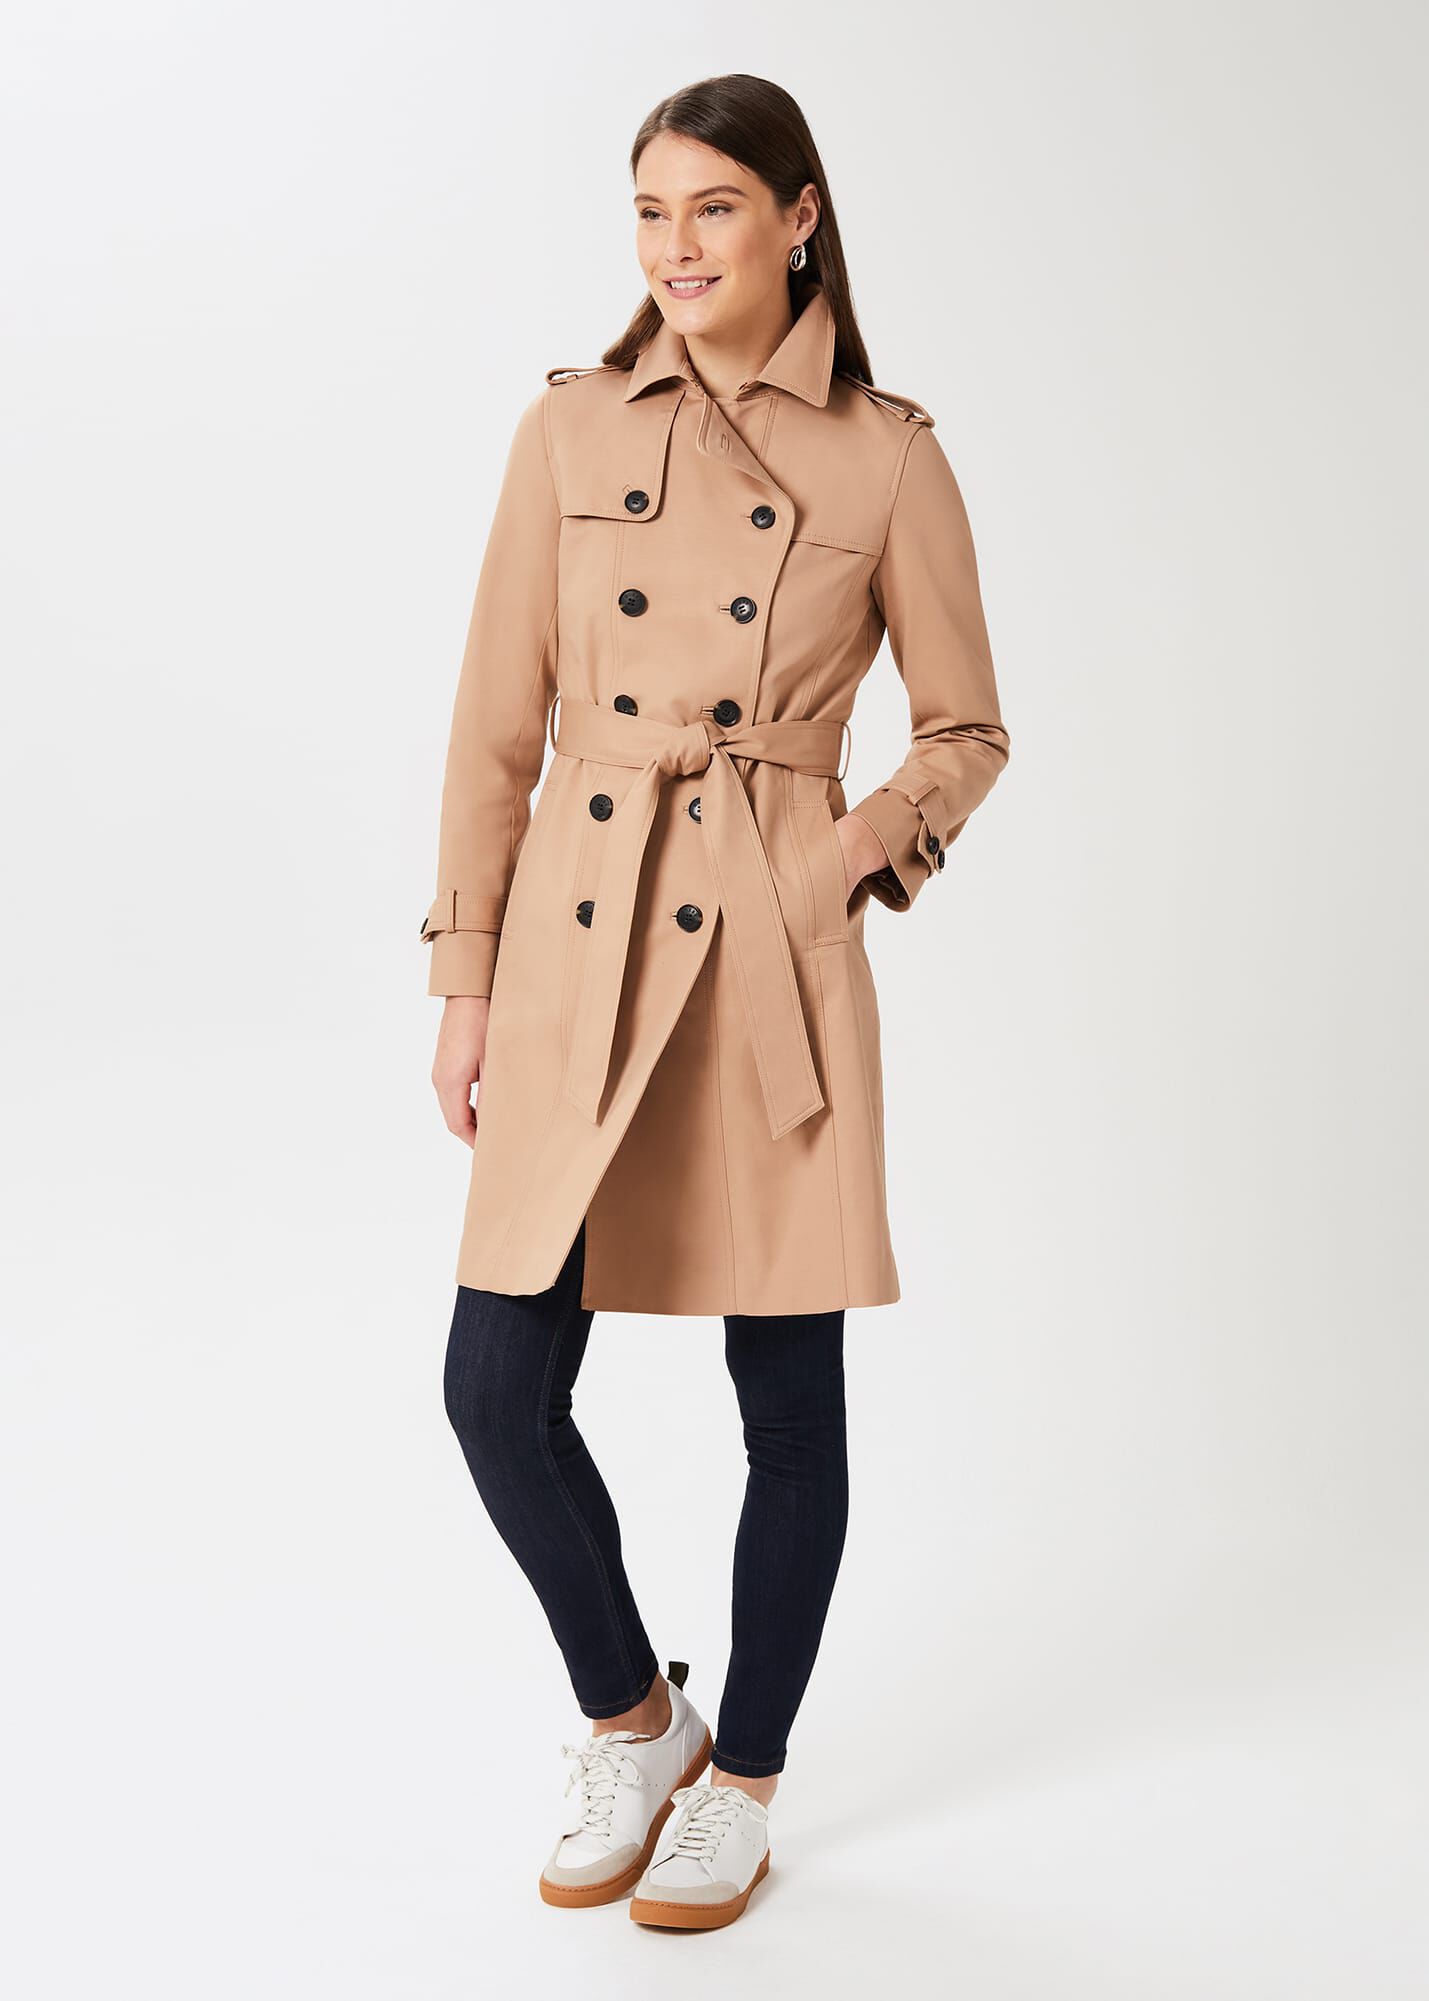 Coats & Jackets | Women's Coats & Jackets | Hobbs London |